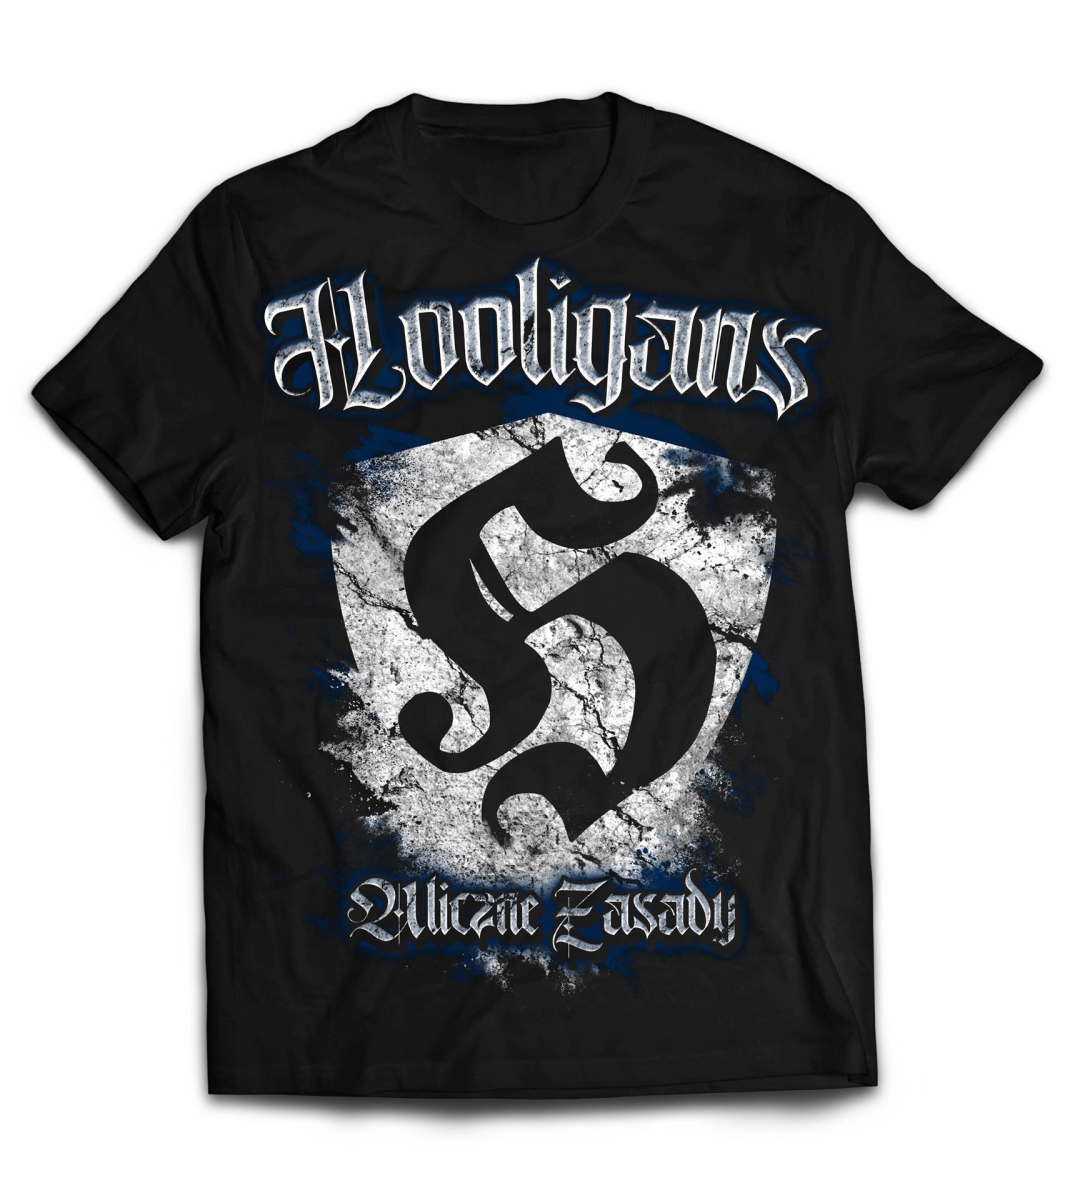 Zdjęcie produktu  Koszulka Hooligans herb duży uliczna zasady